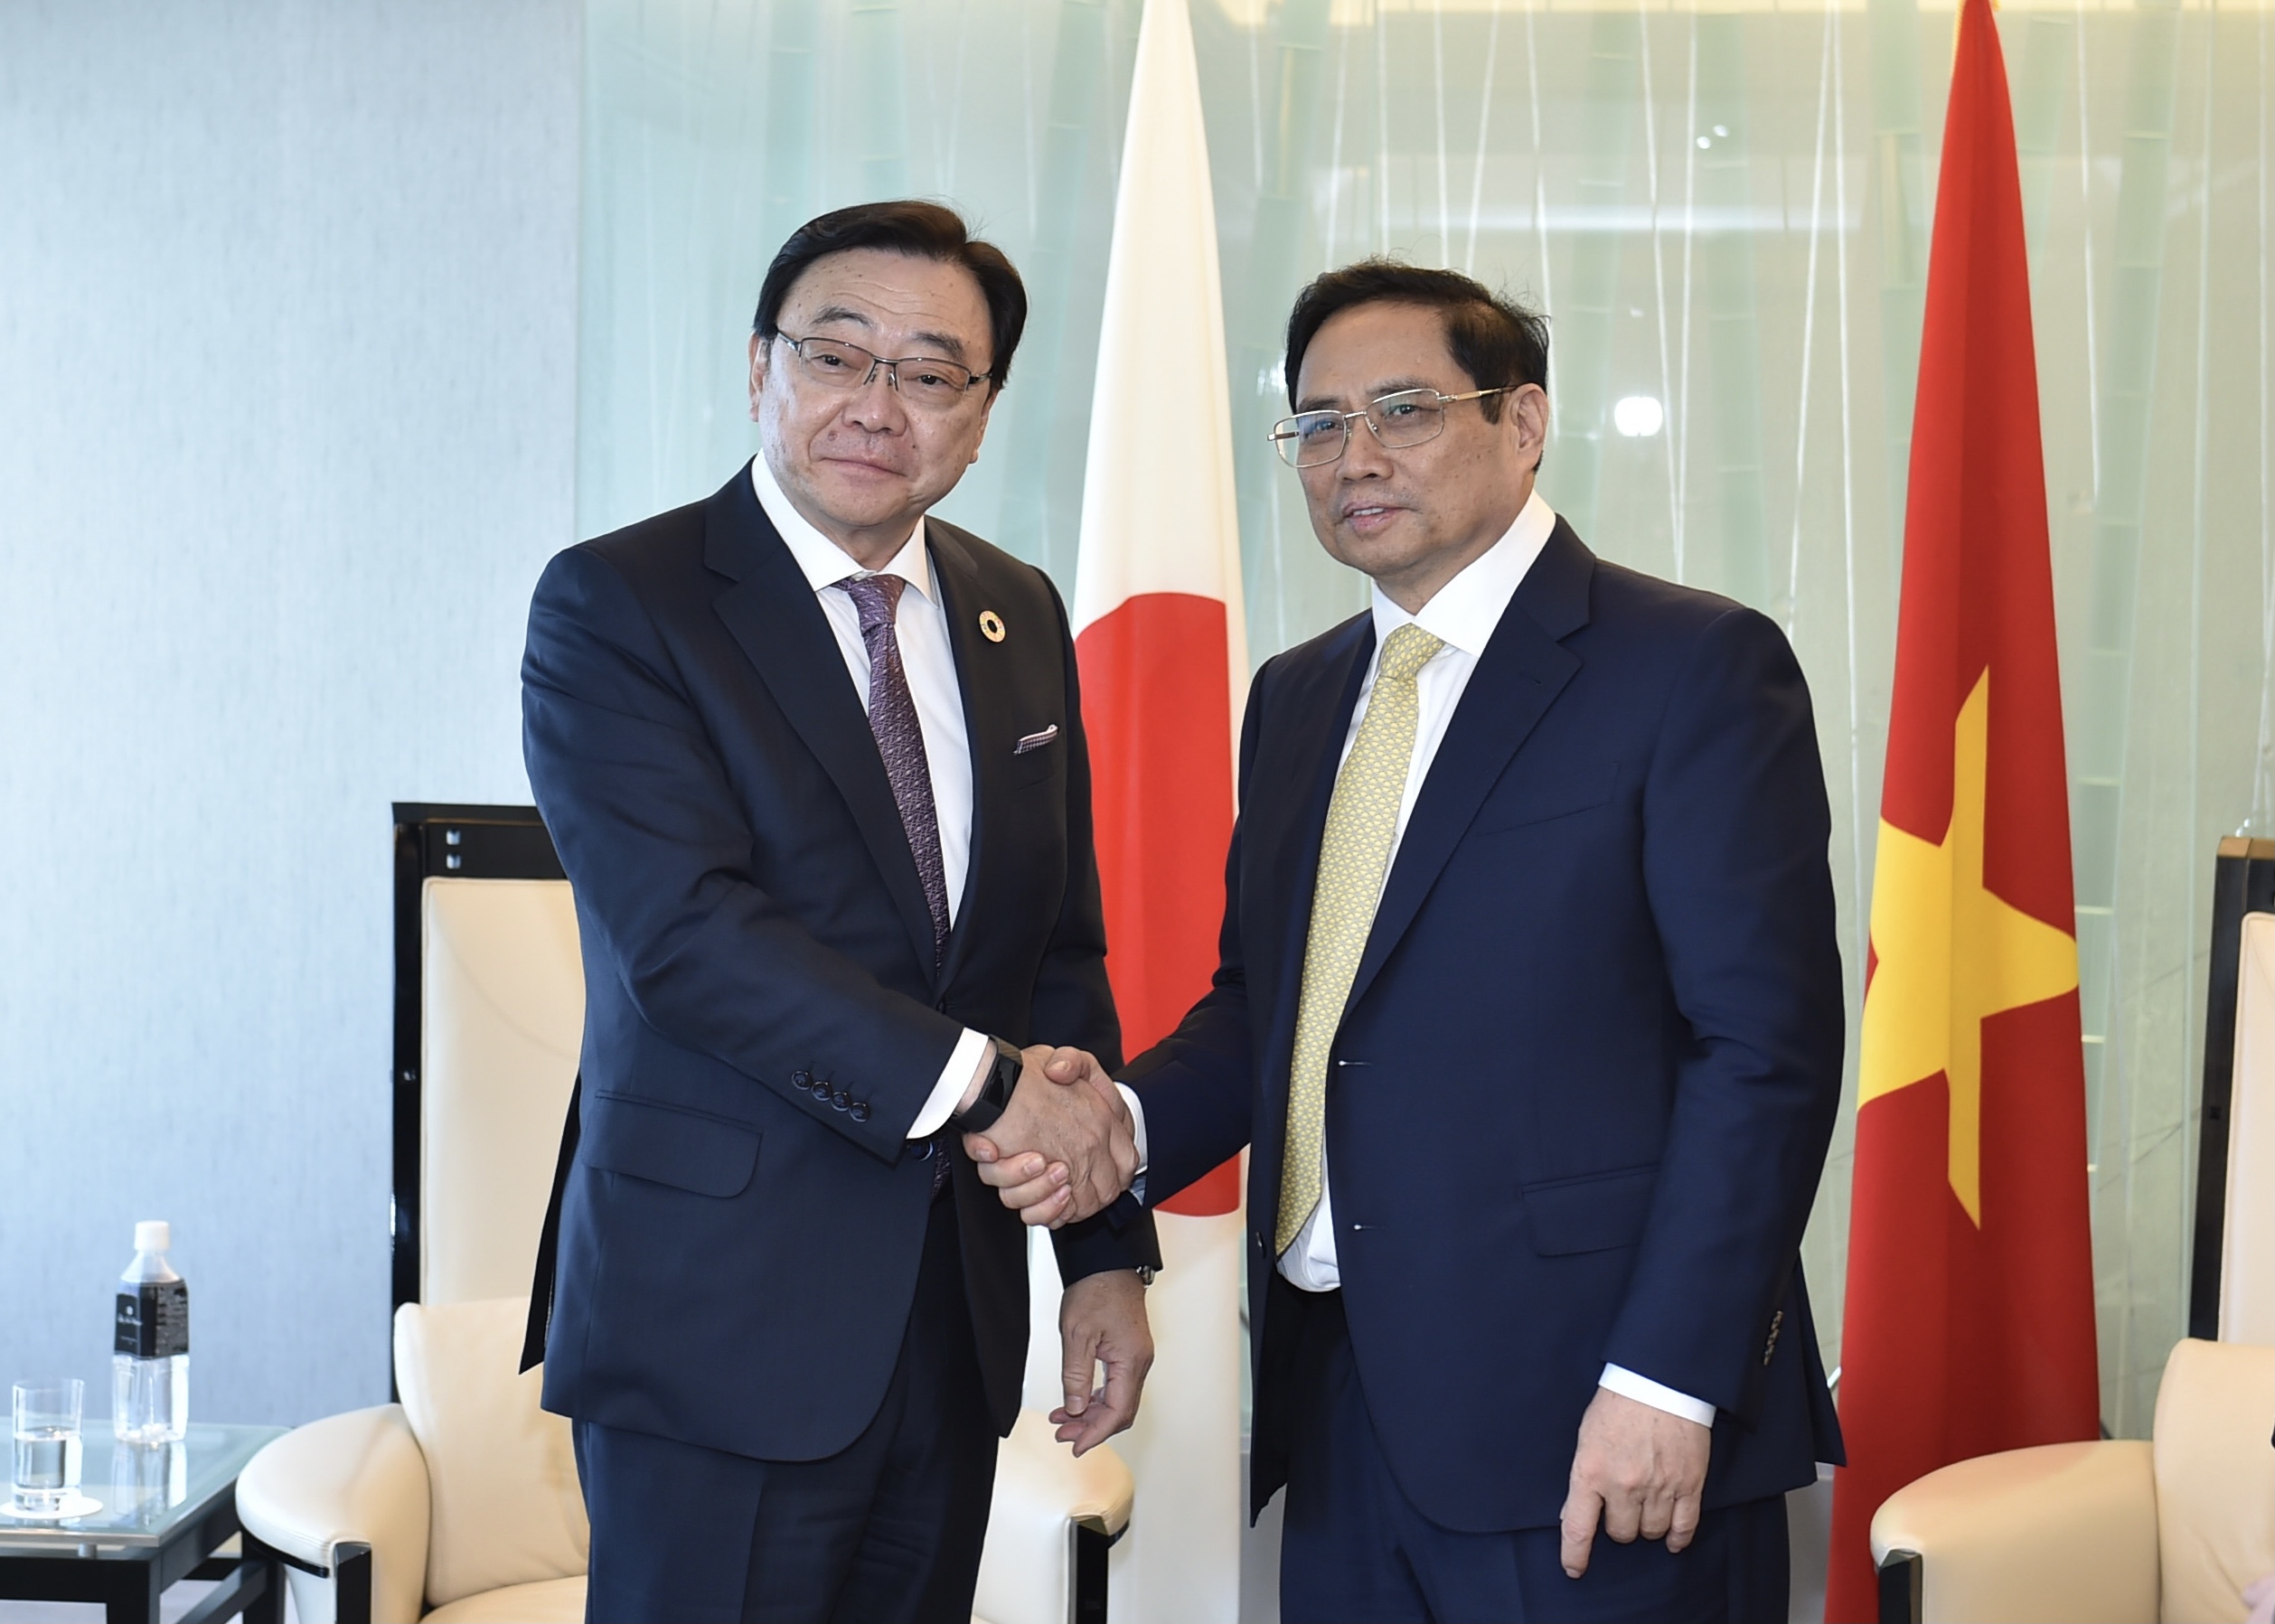 Thủ tướng thúc đẩy hợp tác với các tập đoàn hàng đầu Nhật Bản